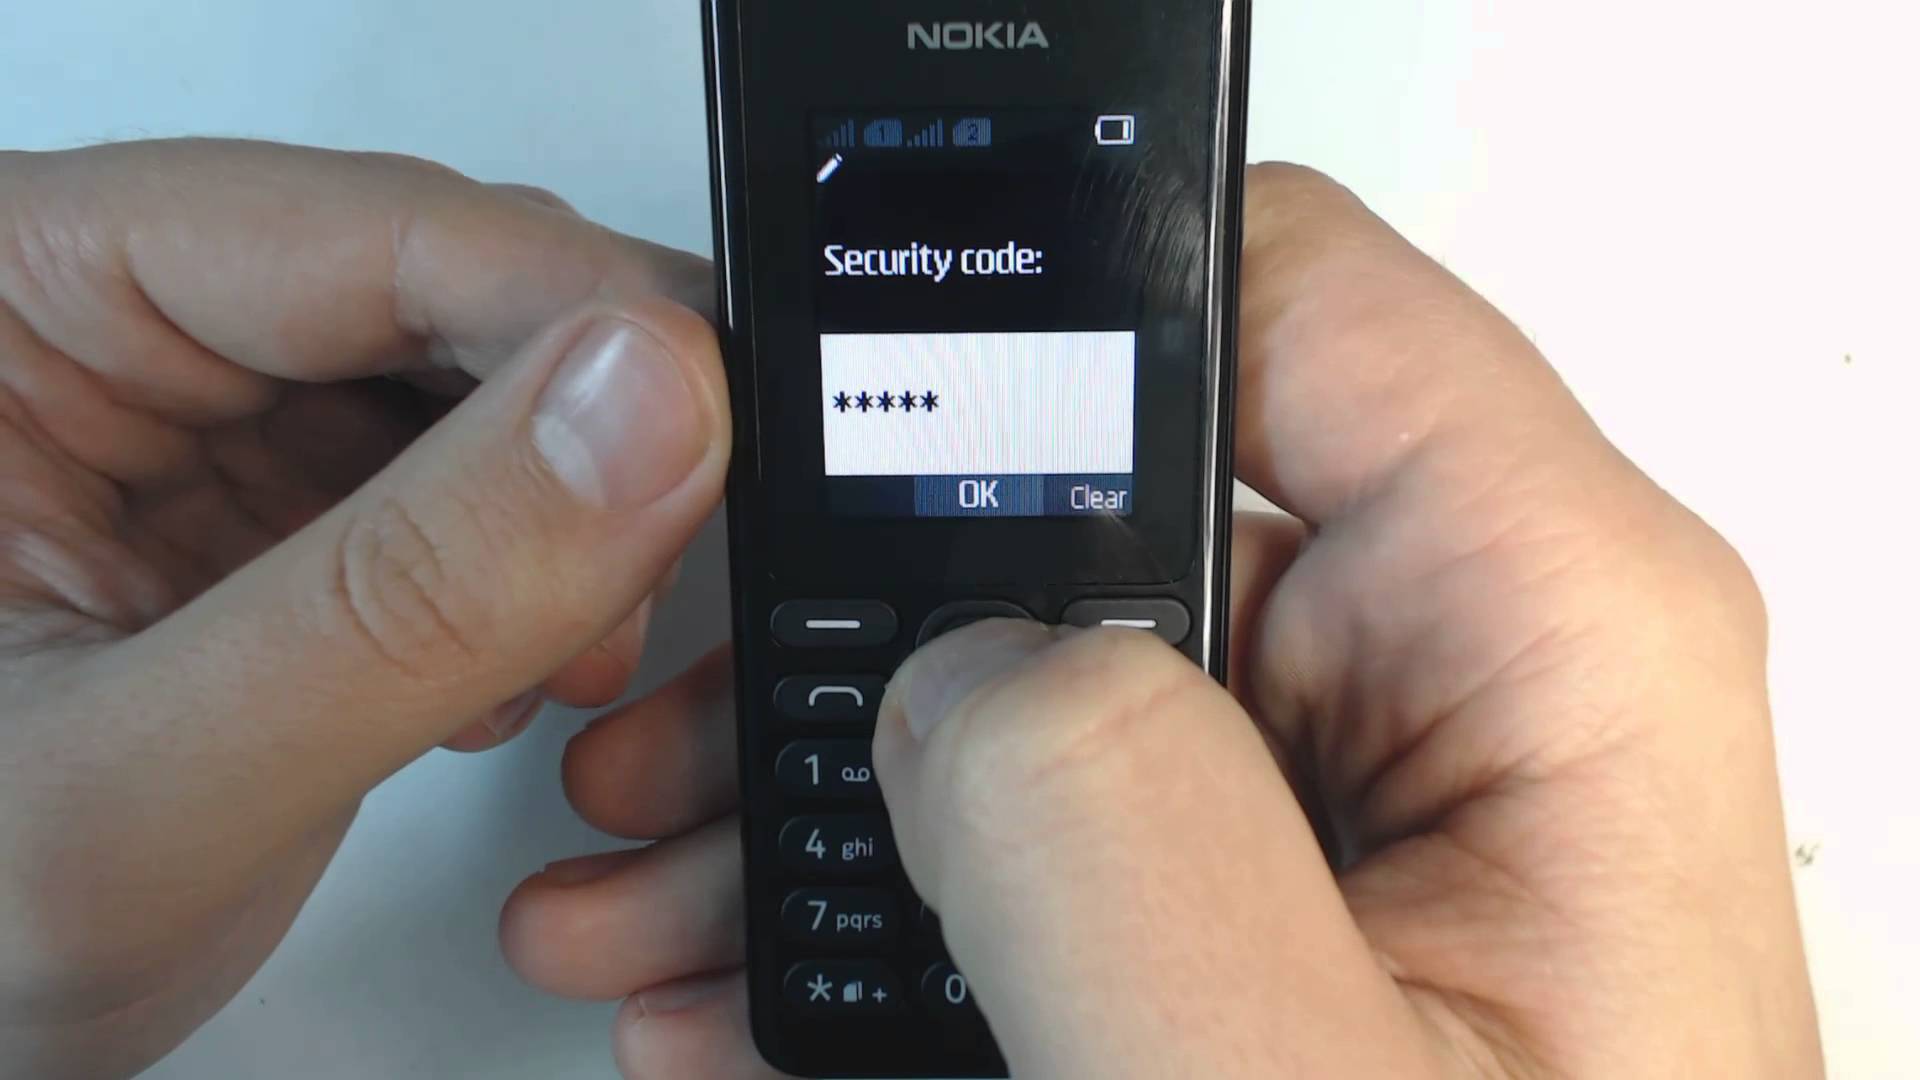 Телефон нокиа блокировка. Пин код телефона нокиа кнопочный 105. Защитный код Nokia кнопочный. Защитный код нокиа 105. Телефон Nokia 108 Dual SIM.